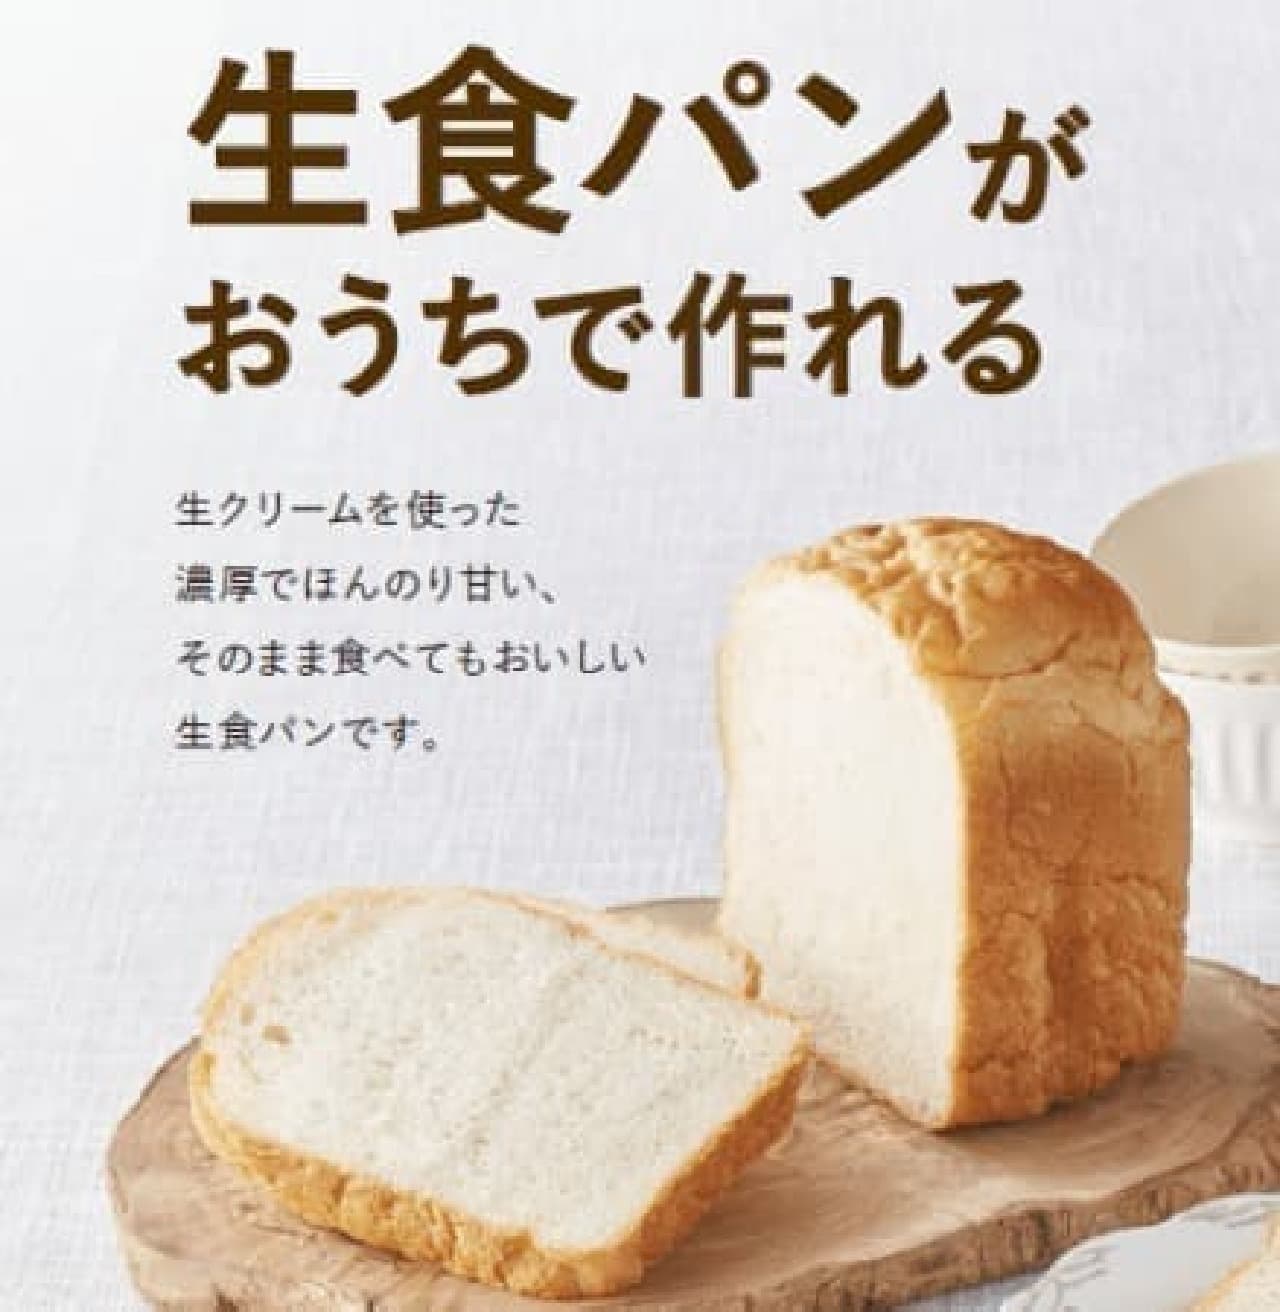 糖質オフパンや生食パンを作れる「シロカのおうちベーカリー」発売 -- 本格的な米糀甘酒メニューも